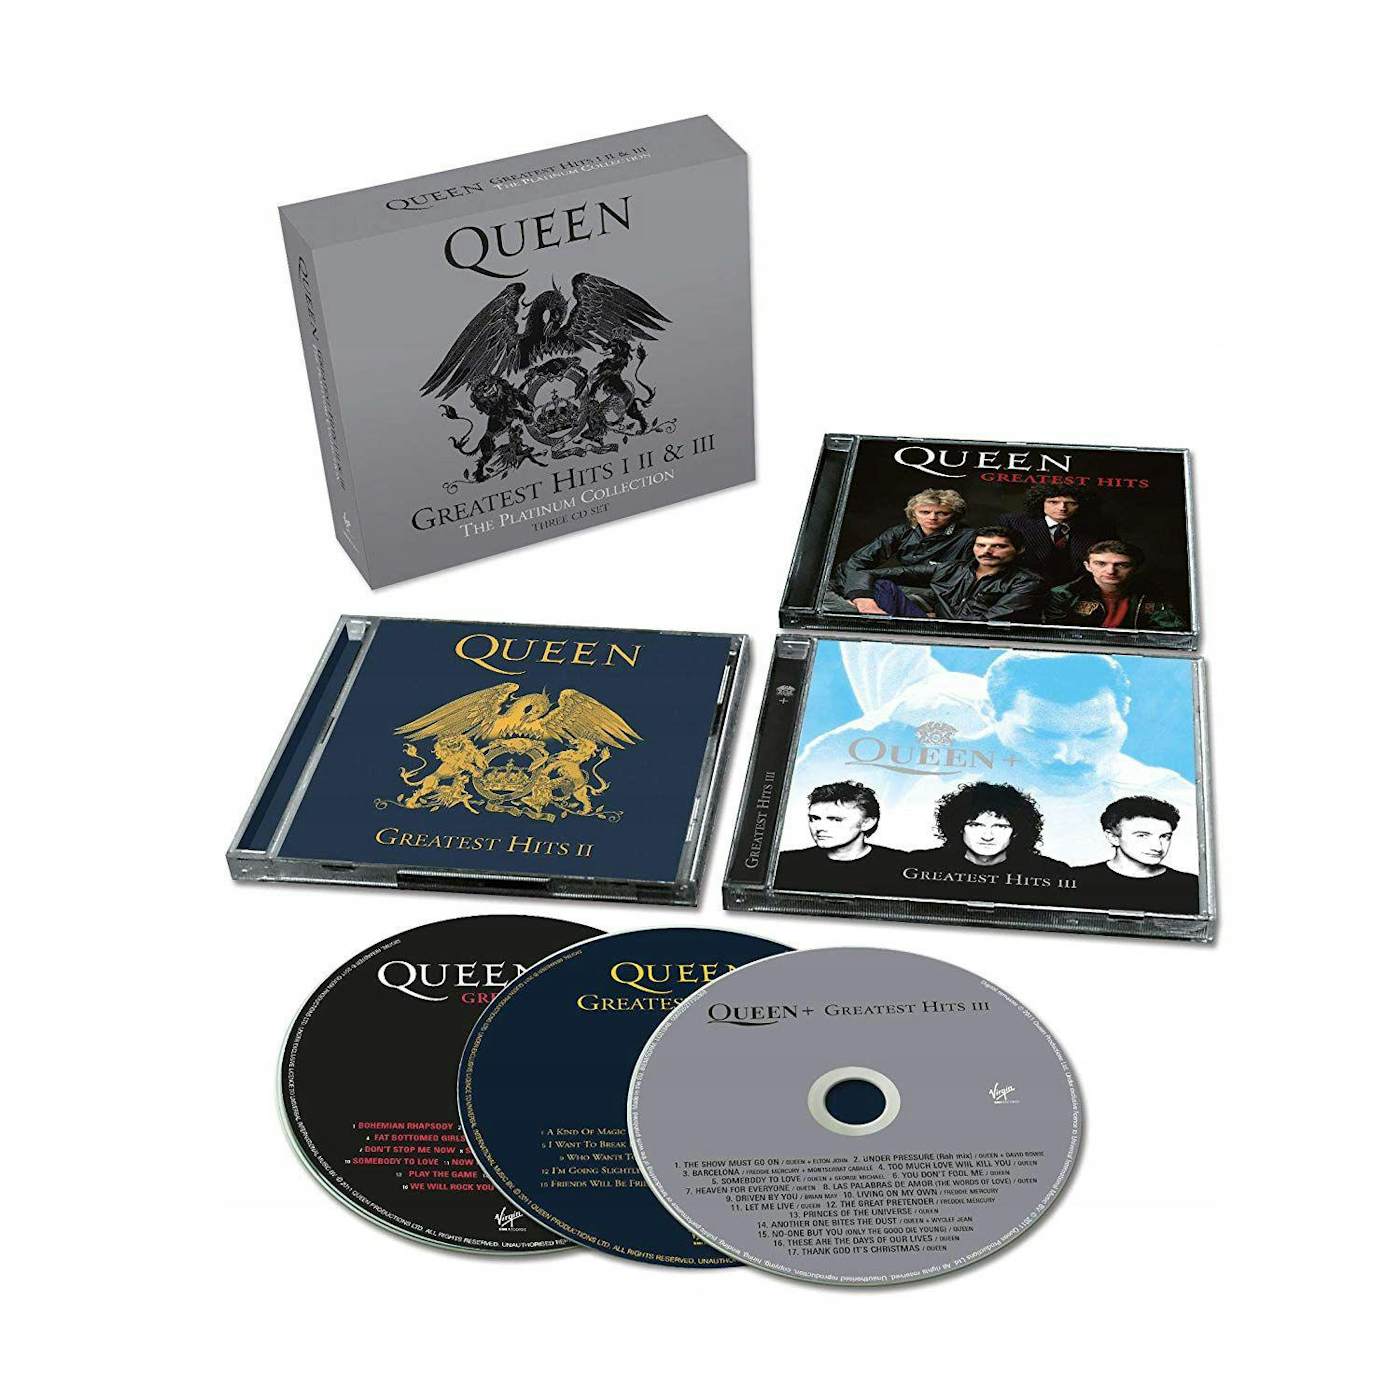  Queen II: CDs & Vinyl